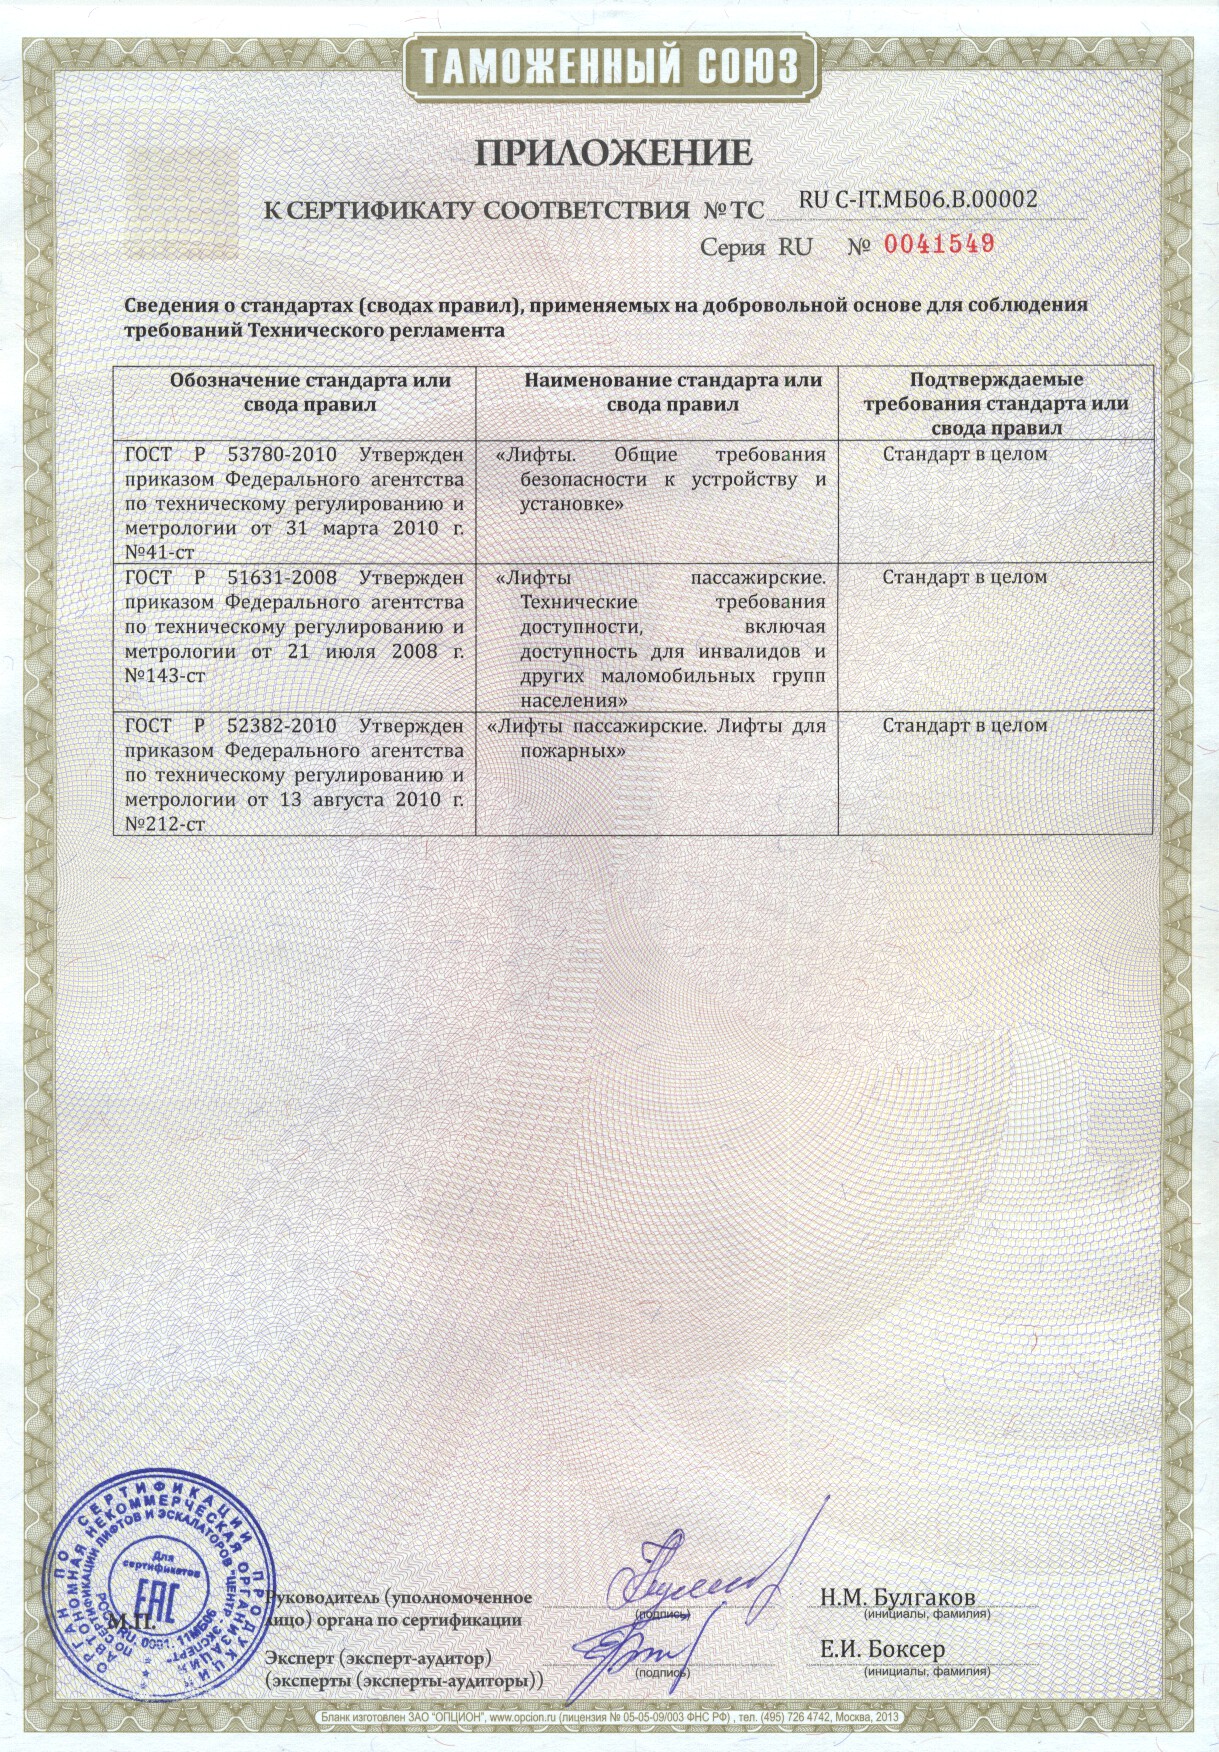 Приложение к сертификату RU C-IT.МБ06.В00002